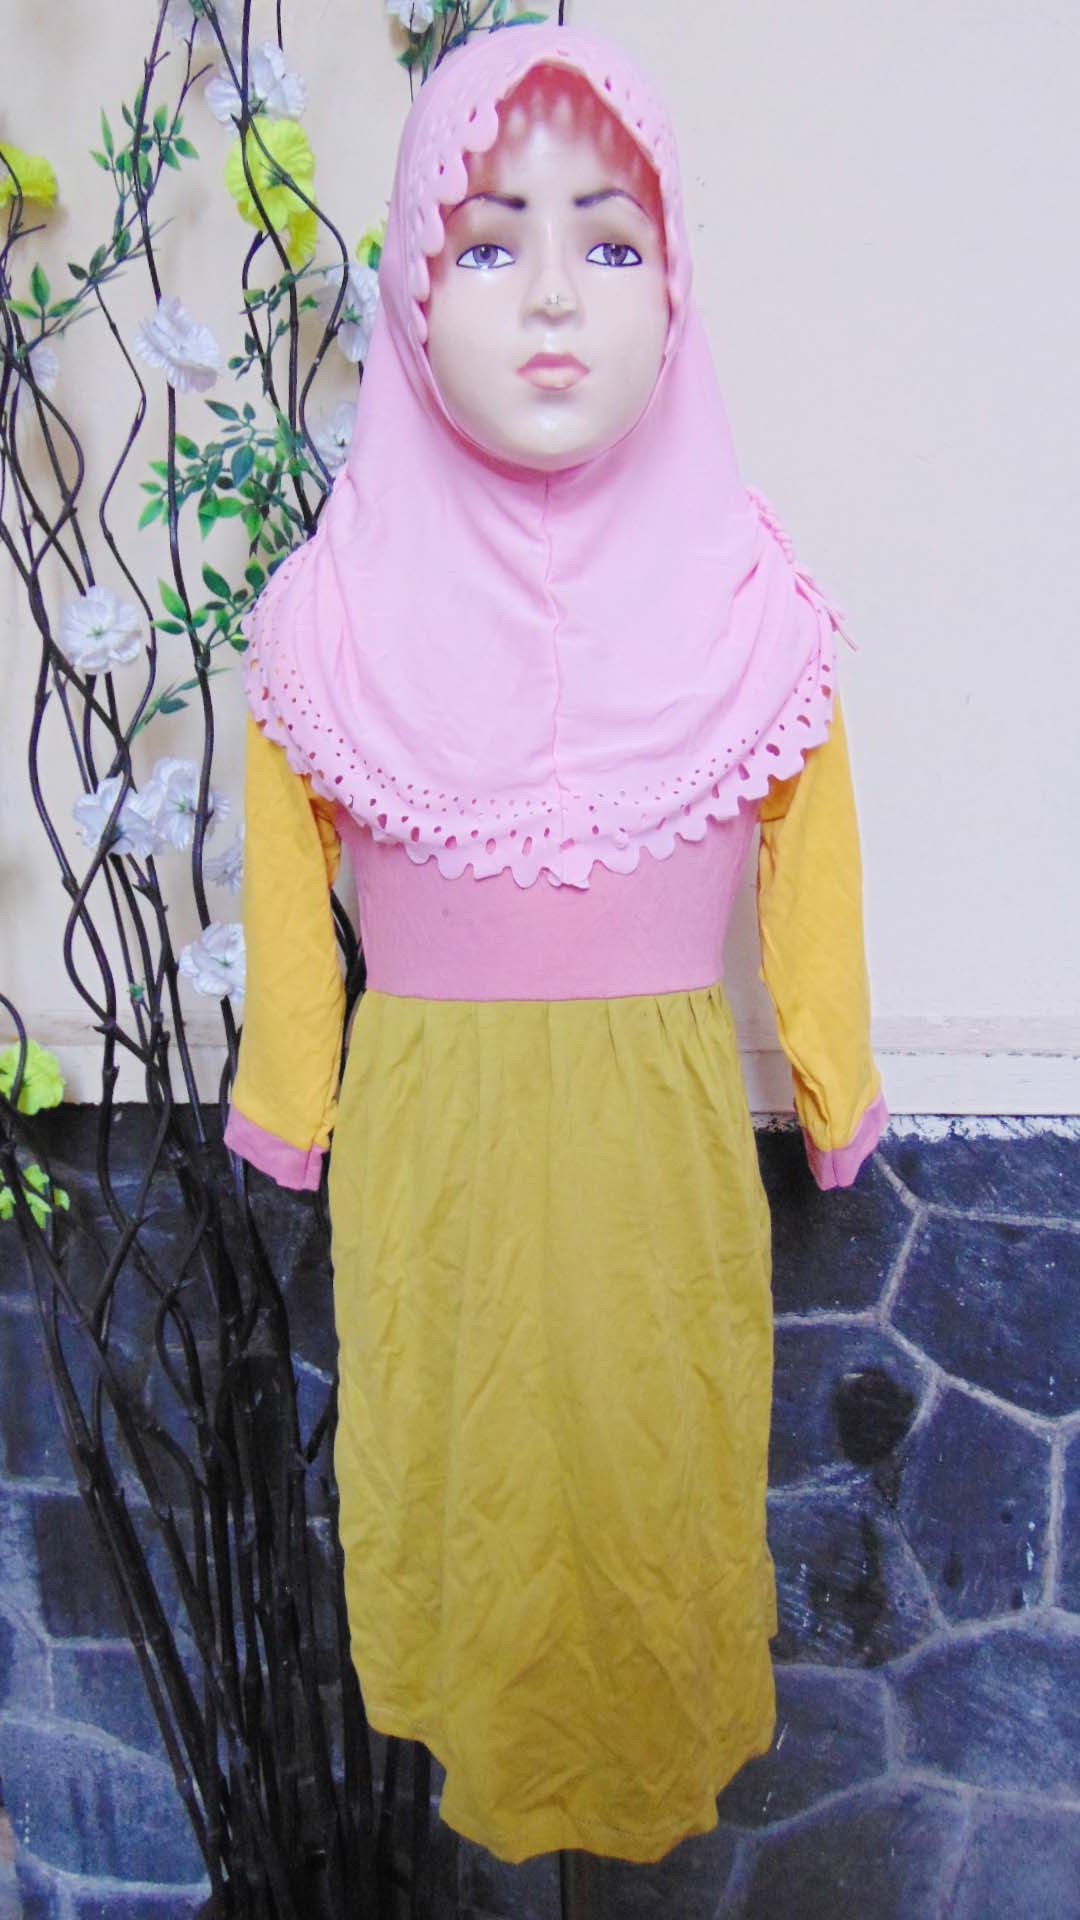 Ide Baju Lebaran Bayi Perempuan Ipdd Plus Jilbab Baju Lebaran Muslimah Gamis Bayi Perempuan